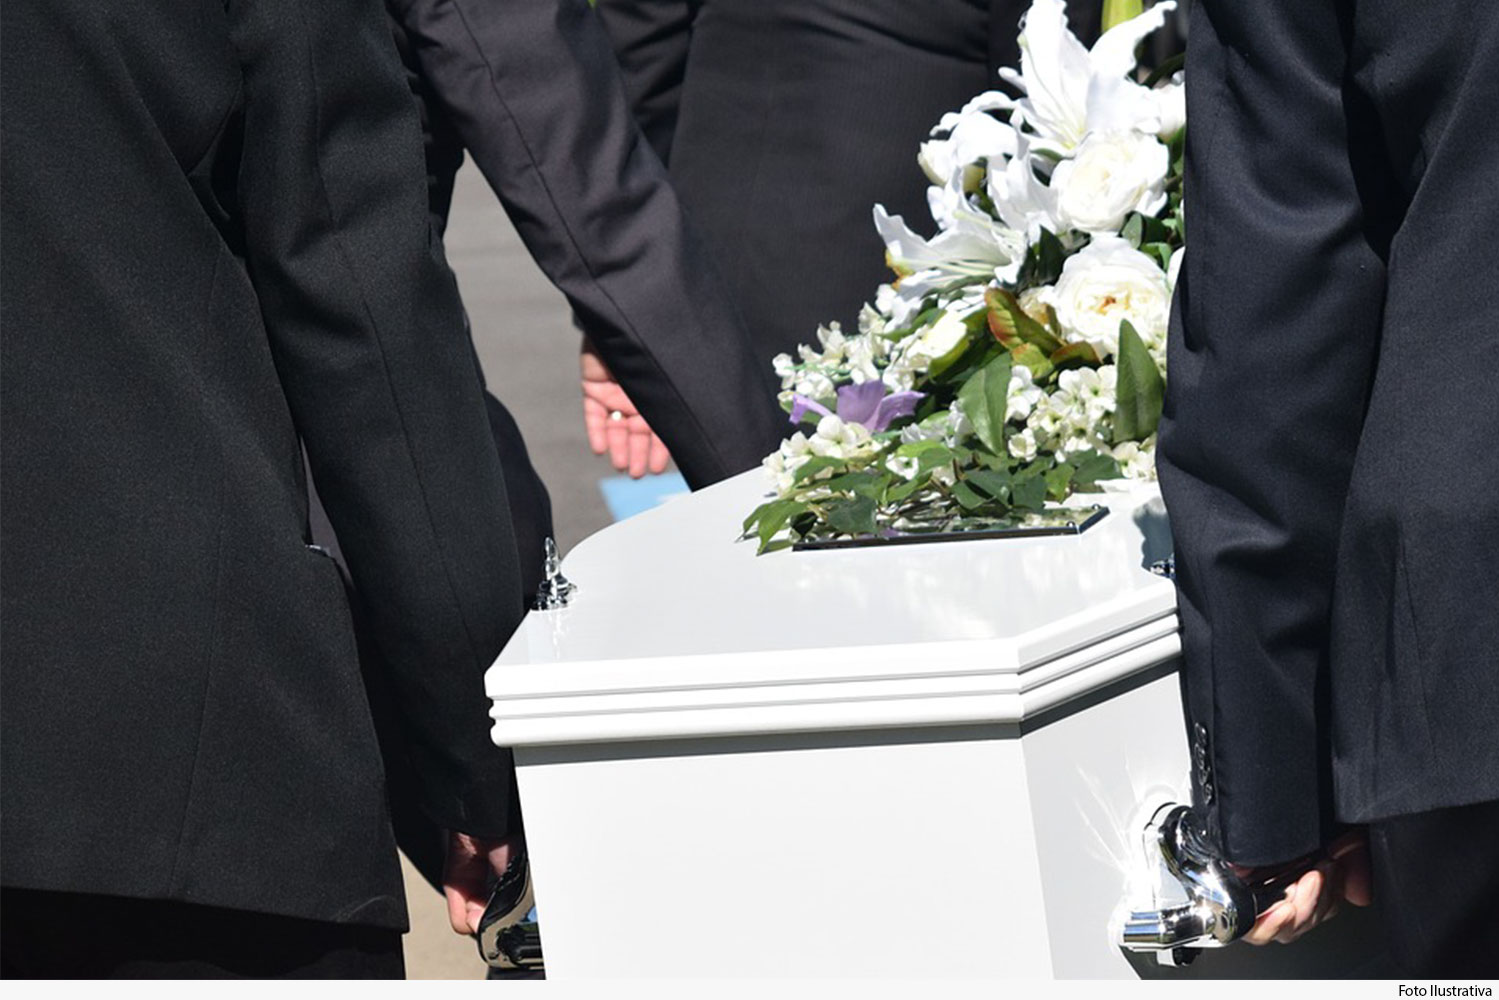 Homens utilizando terno preto,segurando um caixão branco com flores encima